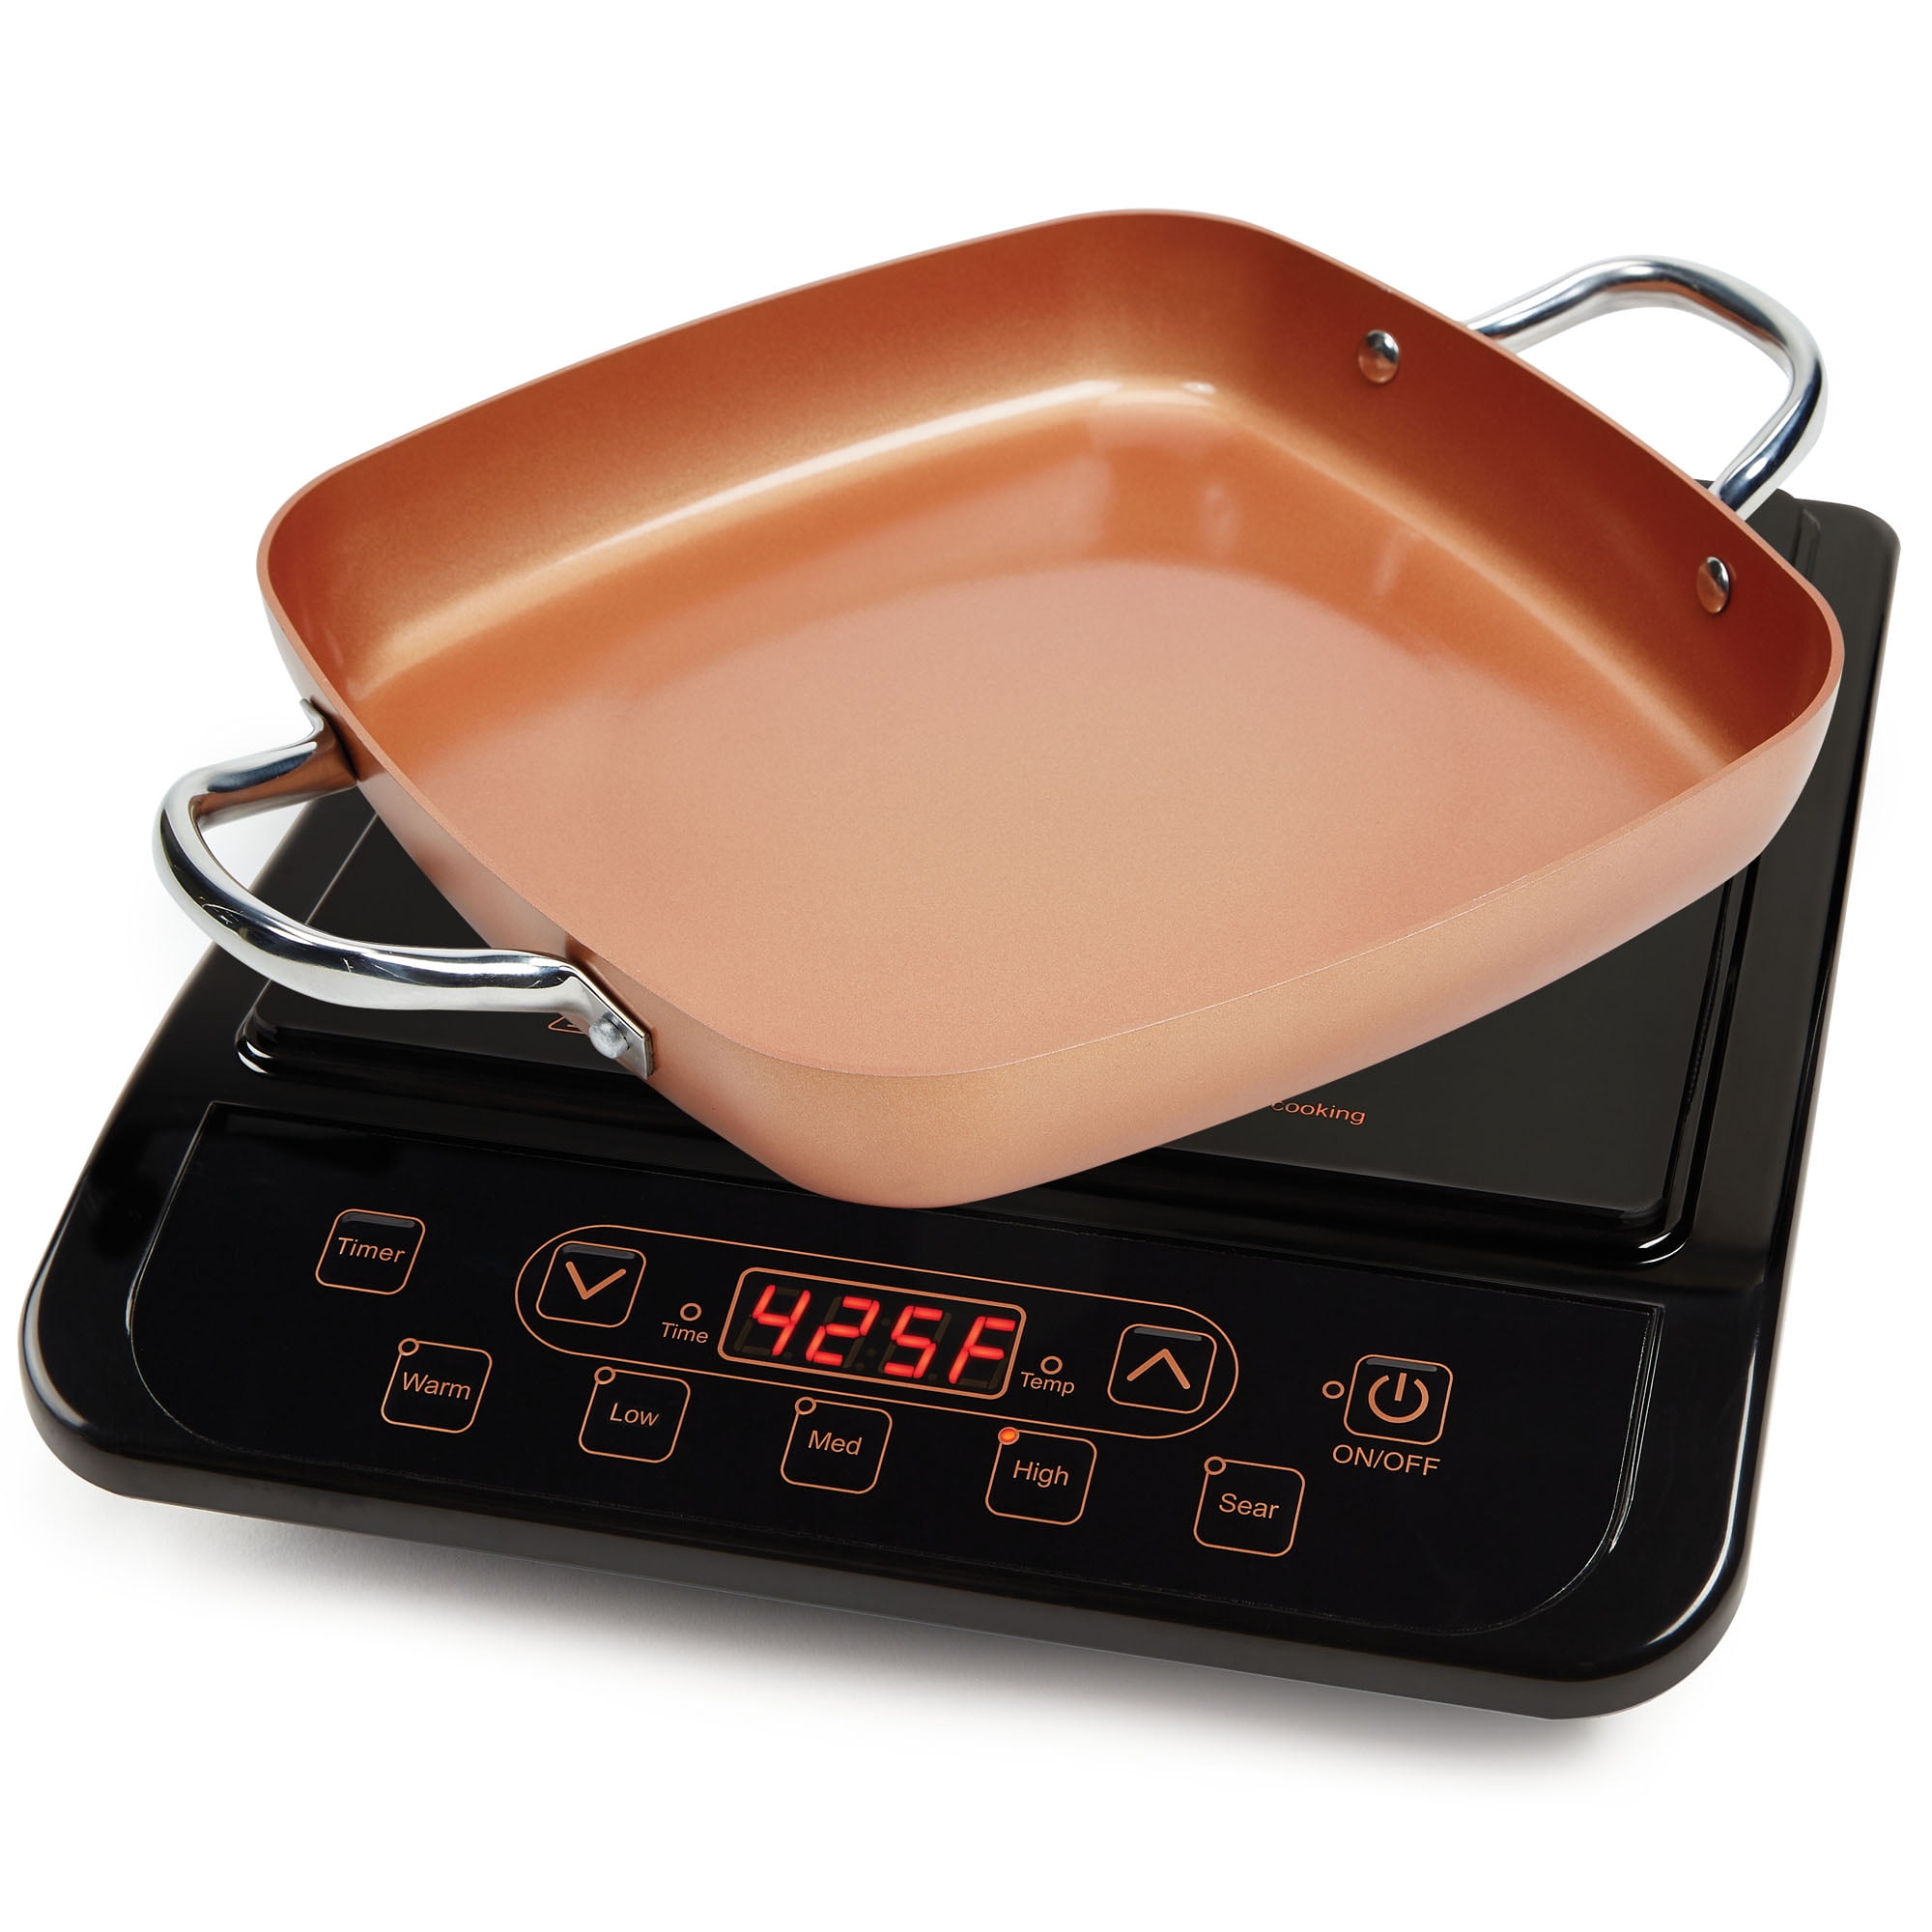 6 PCS URBN-CHEF Ceramic Copper Induction Cooking Pots Lid Saucepans Cookware  Set 5056333836453